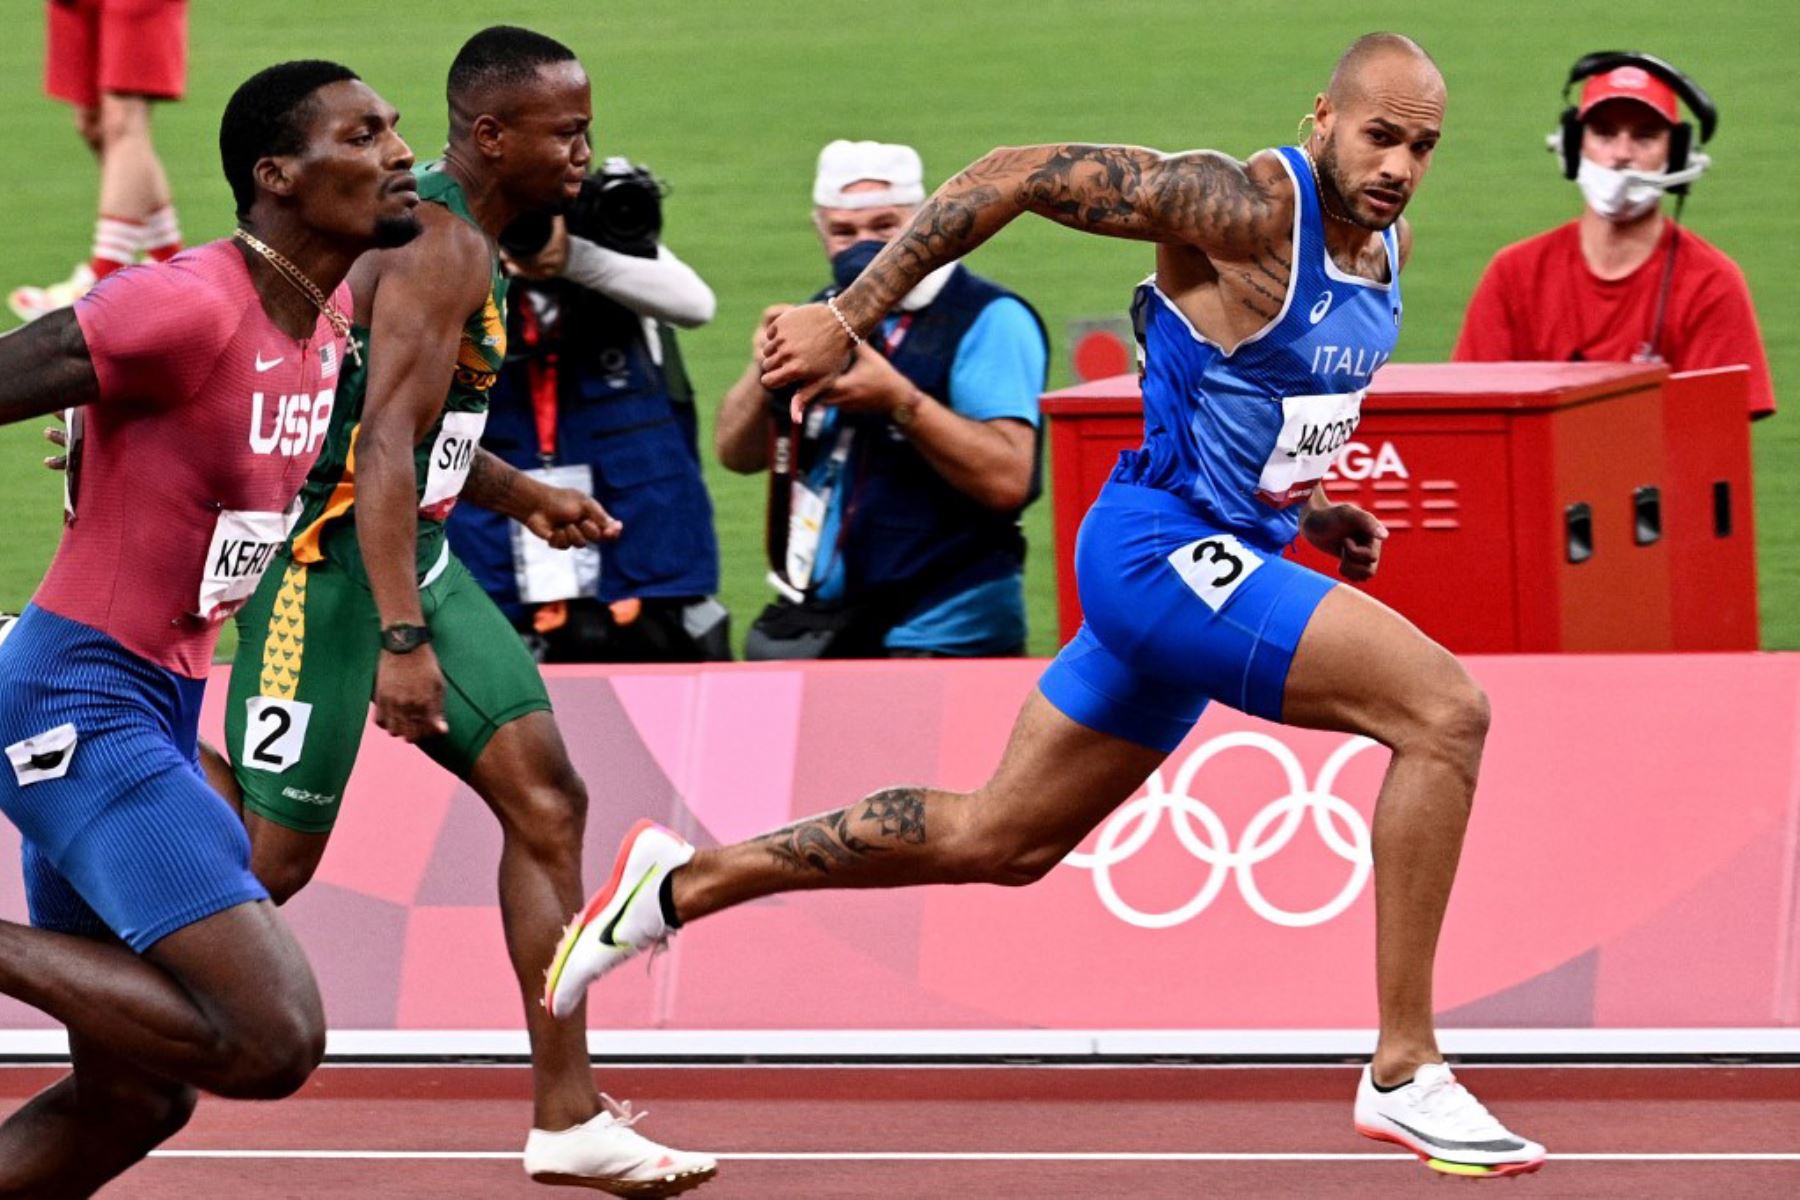 El italiano Lamont Marcell Jacobs, el sudafricano Akani Simbine y el estadounidense Fred Kerley compiten en la final masculina de los 100 metros durante los Juegos Olímpicos de Tokio 2020.

Foto: AFP